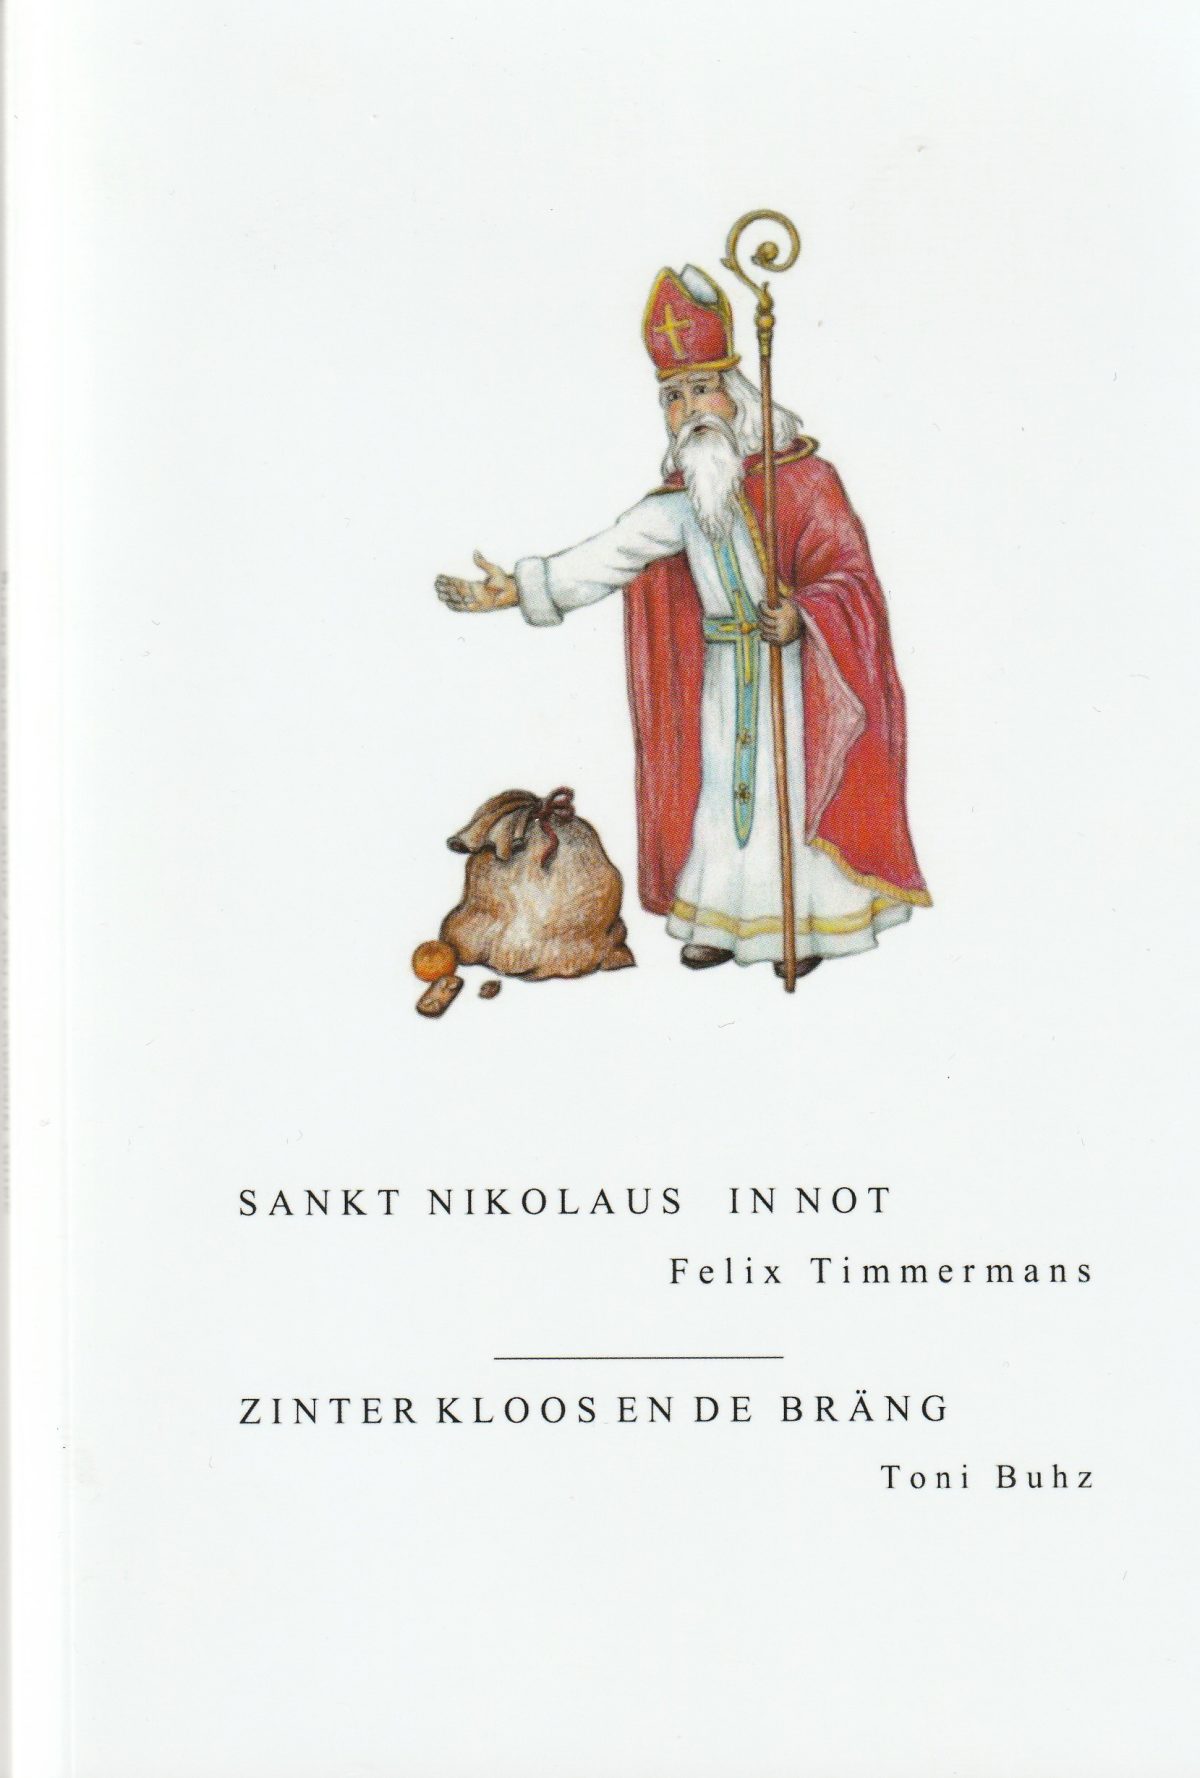 Neues Buch von Toni Buhz: Zinter Kloos en de Bräng (Sankt Nikolaus in Not)